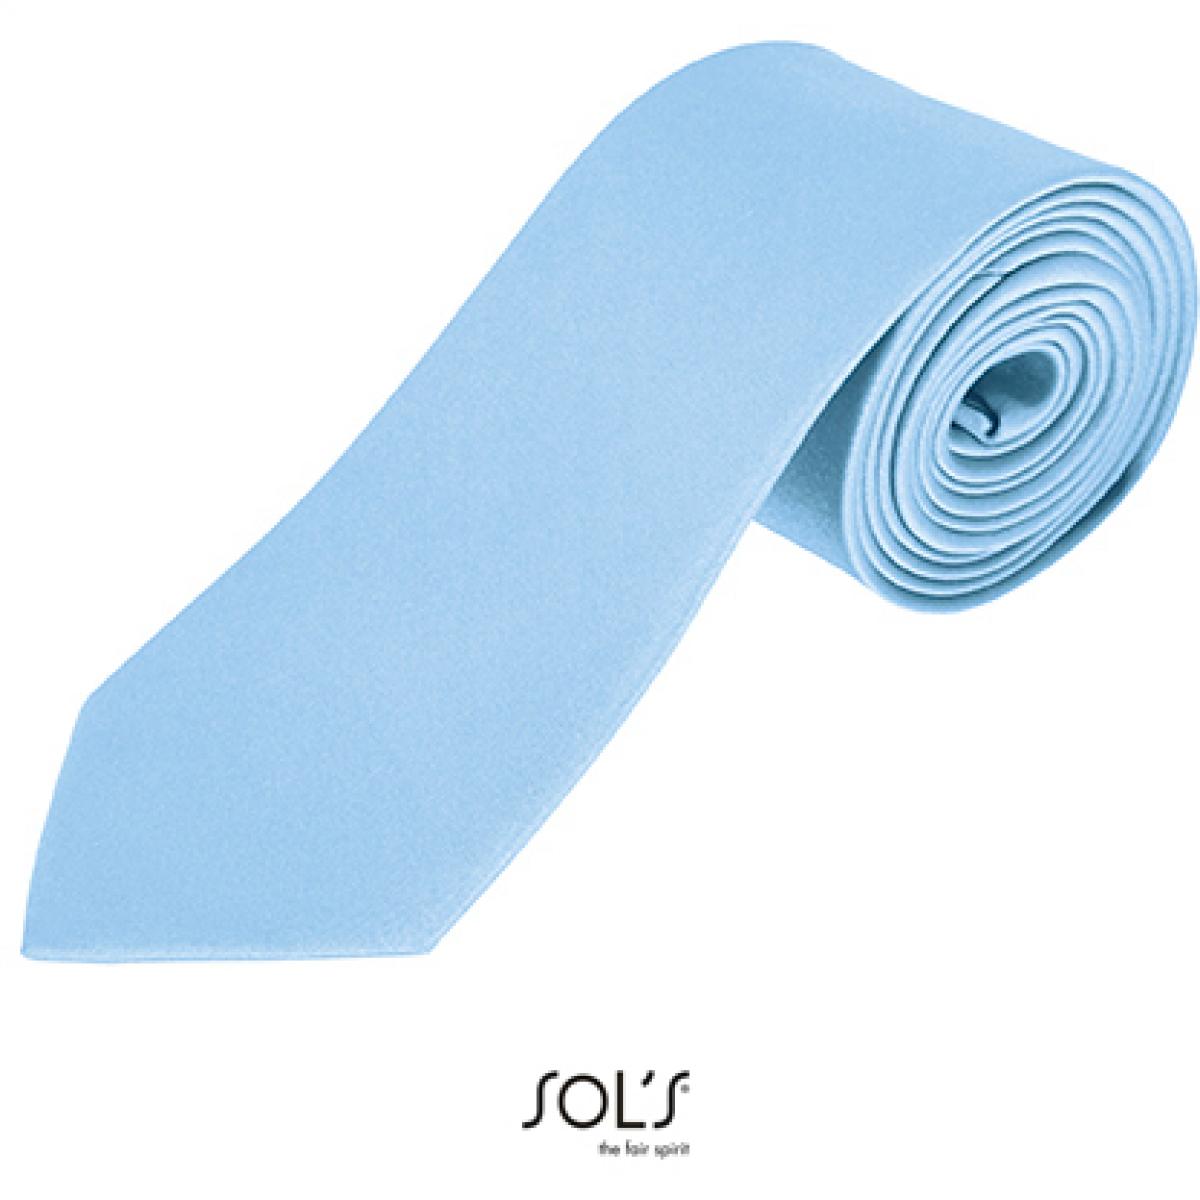 Hersteller: SOLs Herstellernummer: 02932 Artikelbezeichnung: Herren Krawatte Garner Tie - Länge: 150 cm, Breite: 7 cm" Farbe: Light Blue